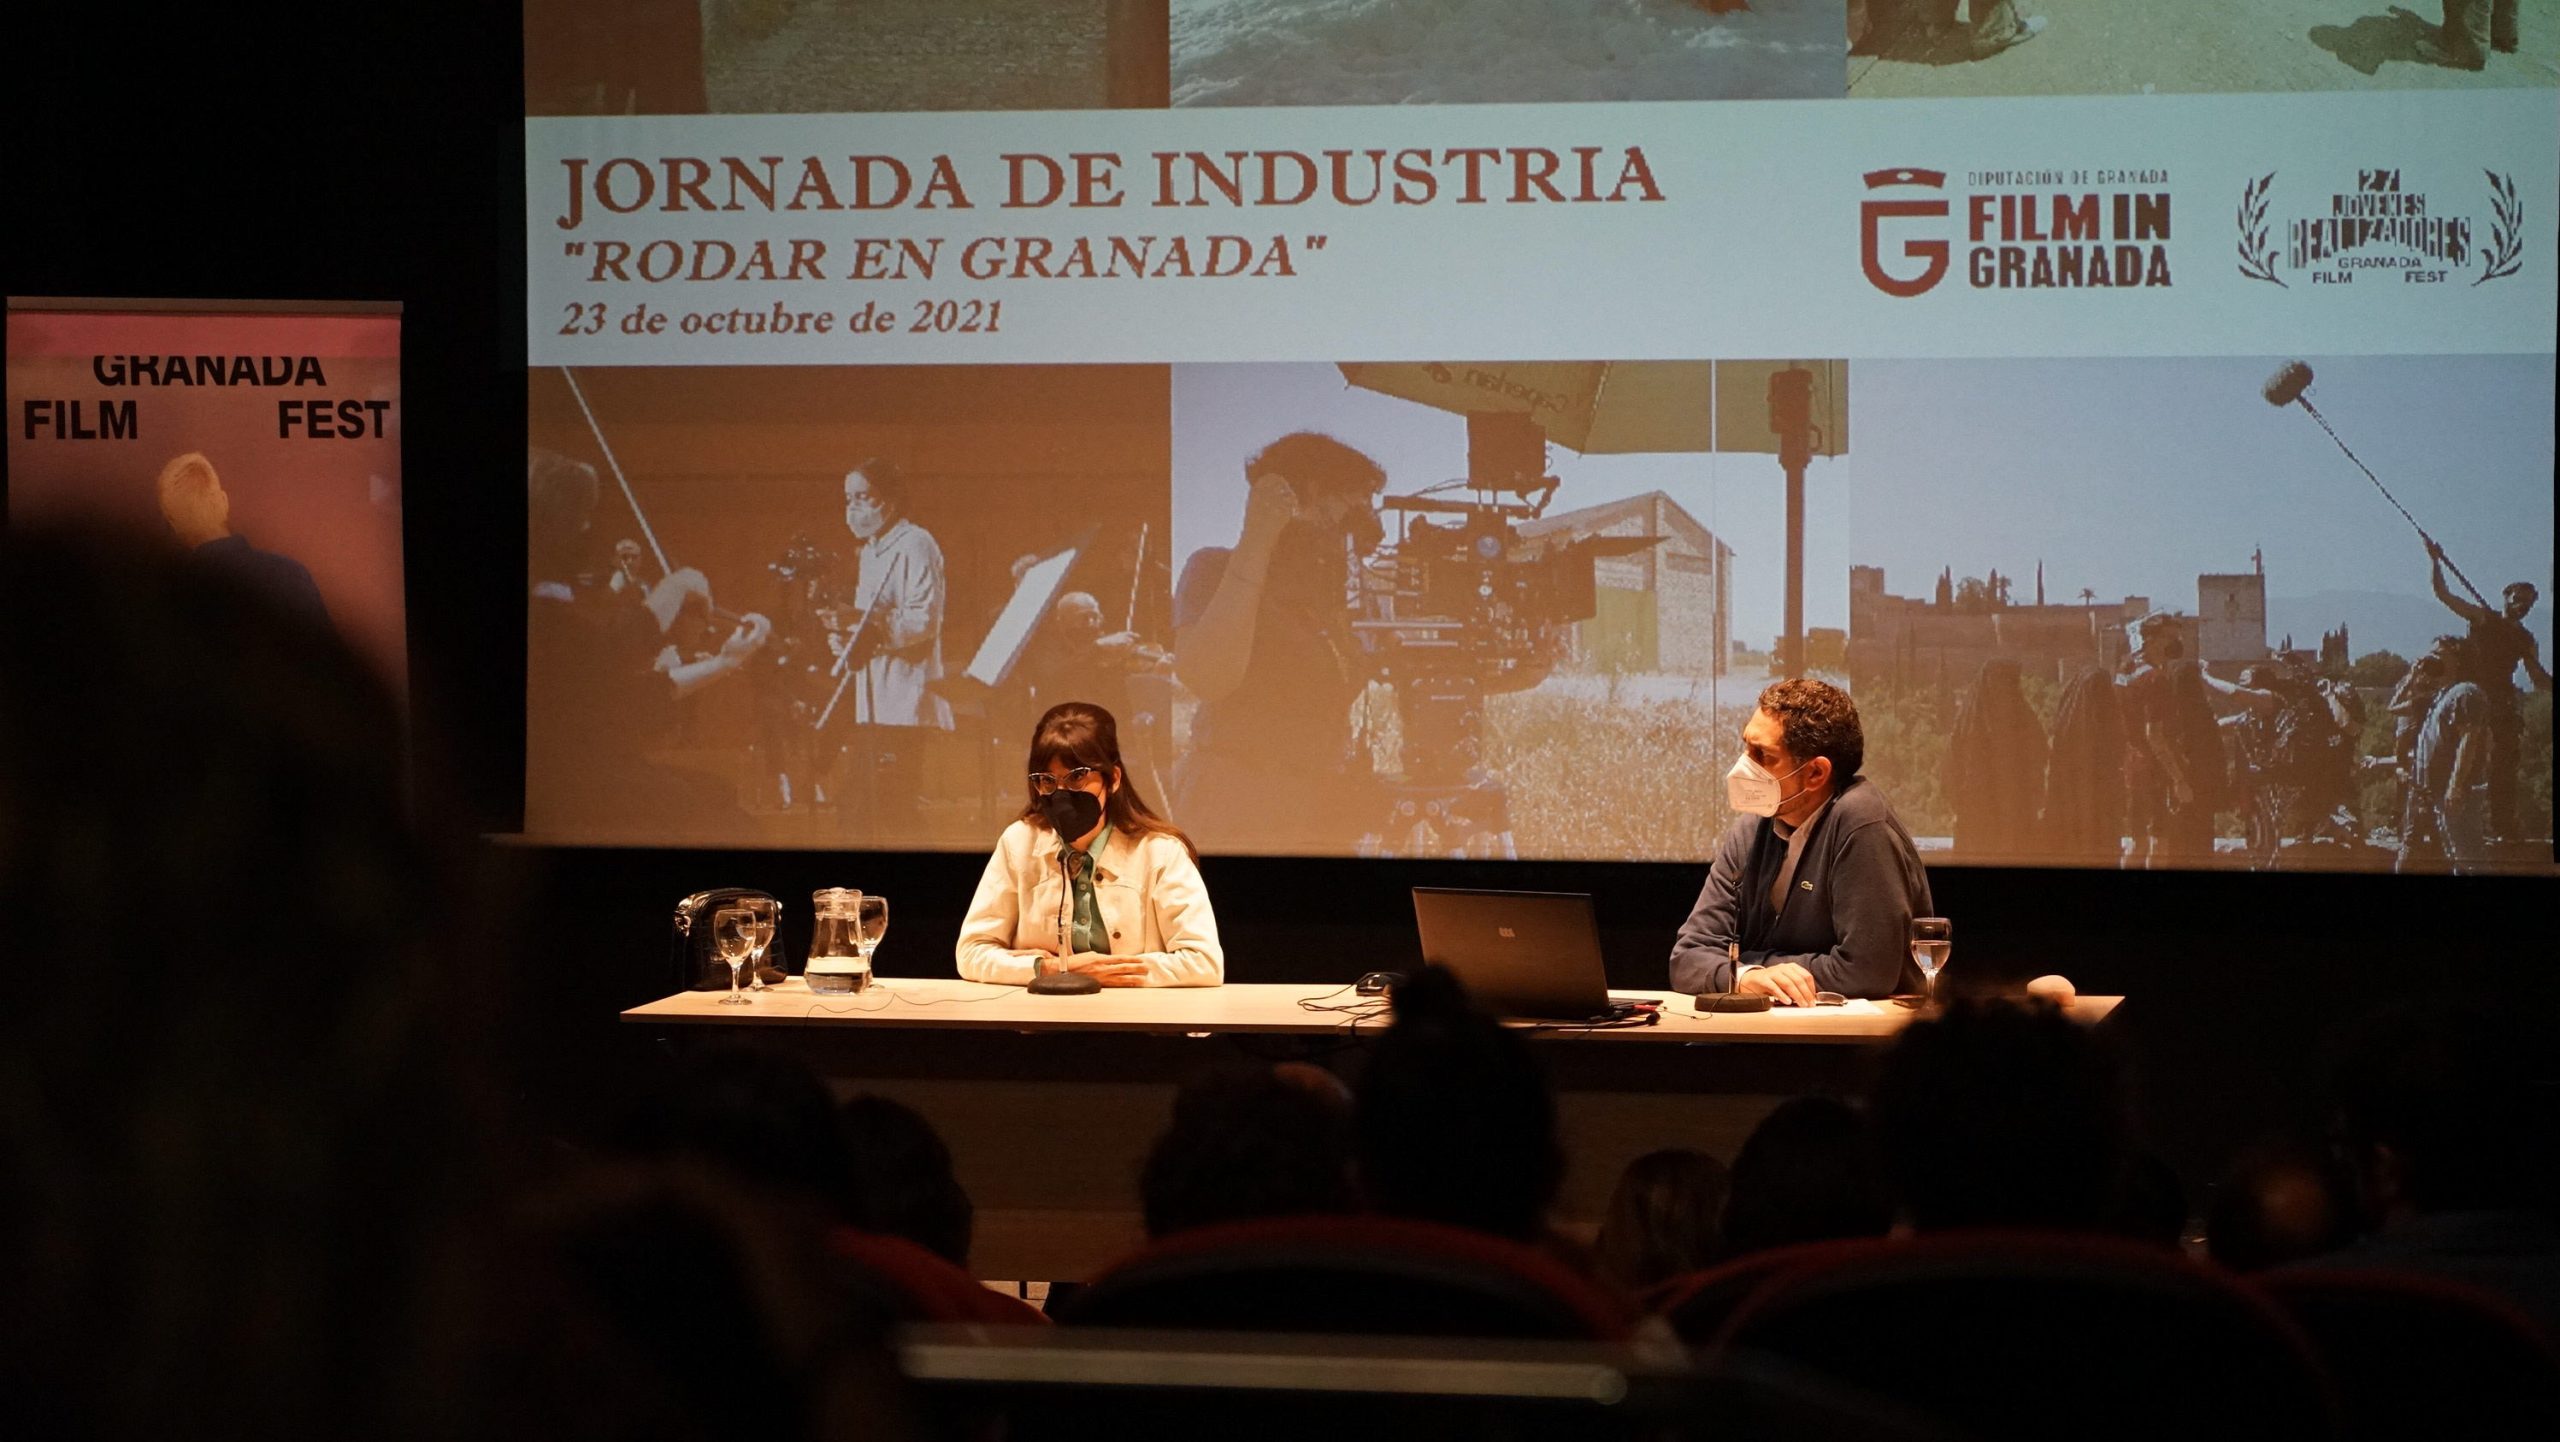 “Film in Granada”, nominada a la mejor difusión en los 34 Premios Asecan